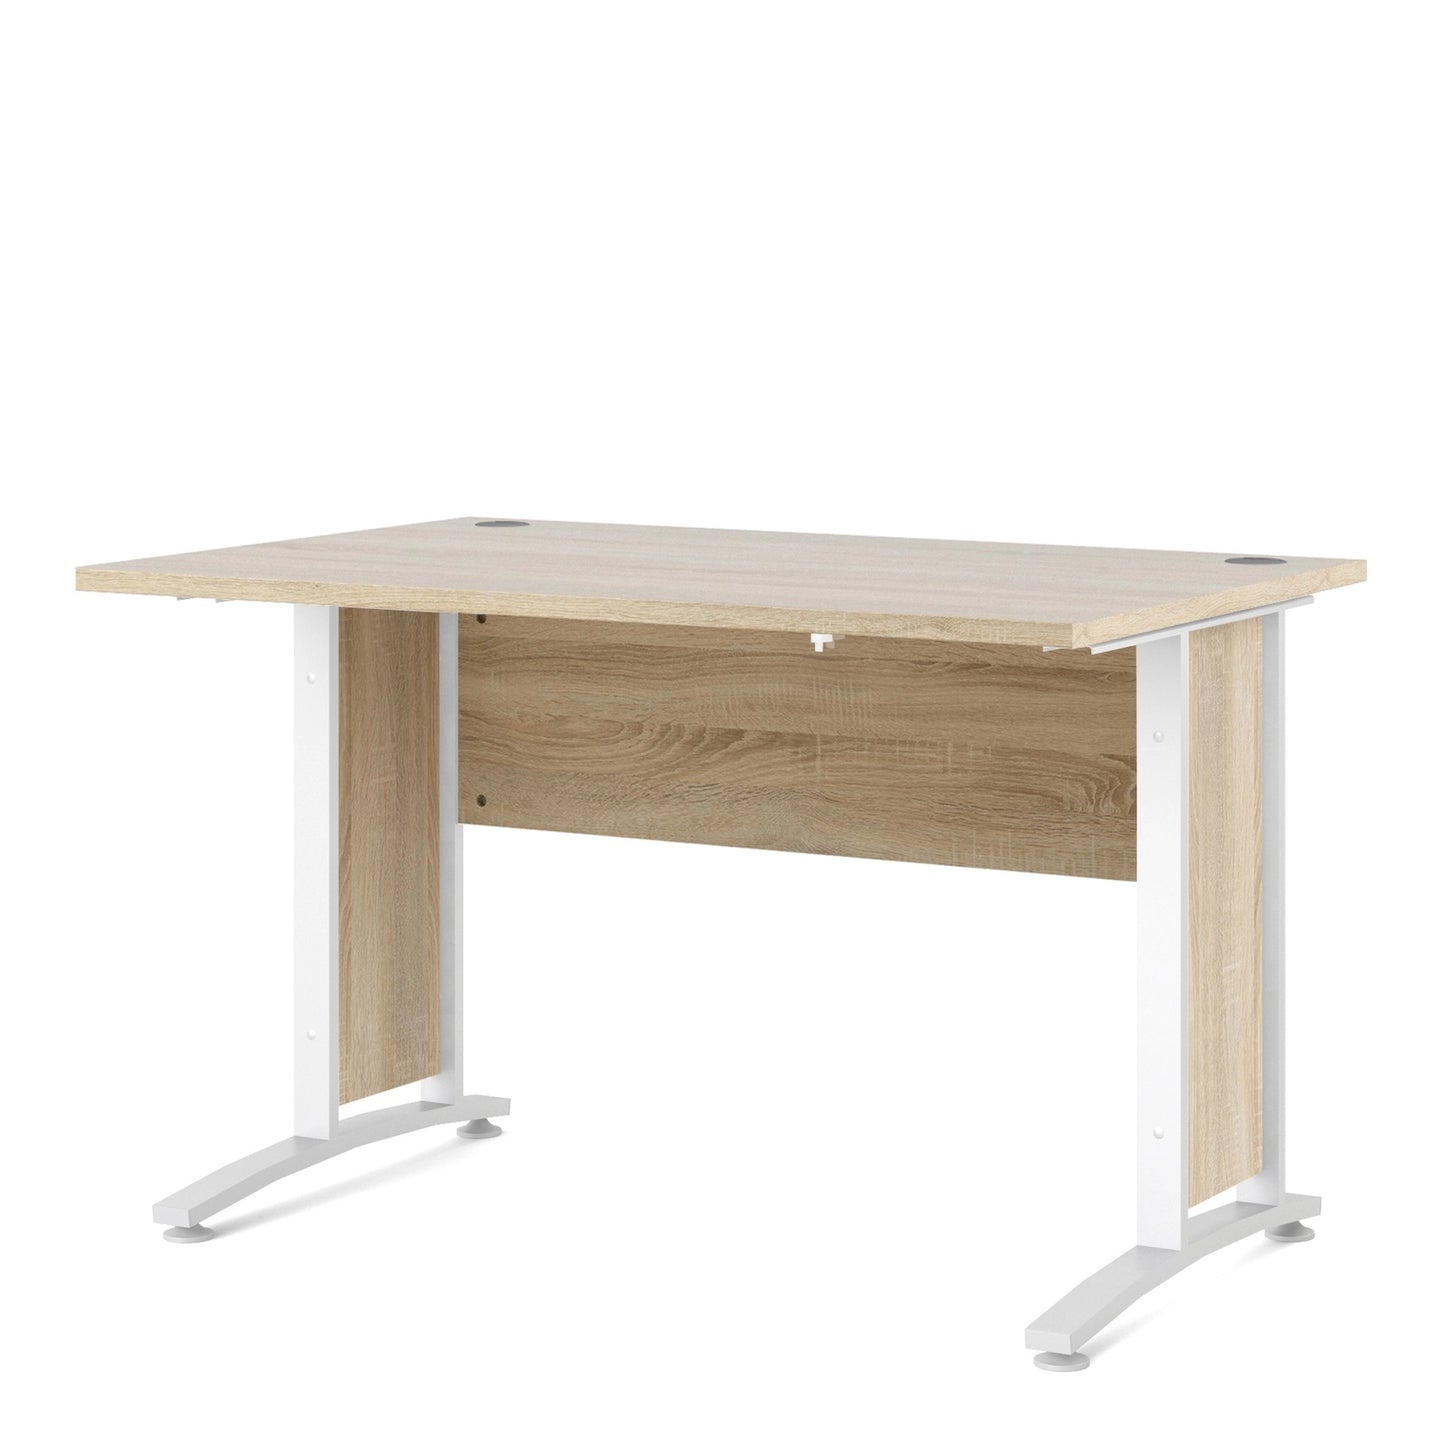 Furniture To Go Prima Desk 120cm in Oak with White Legs